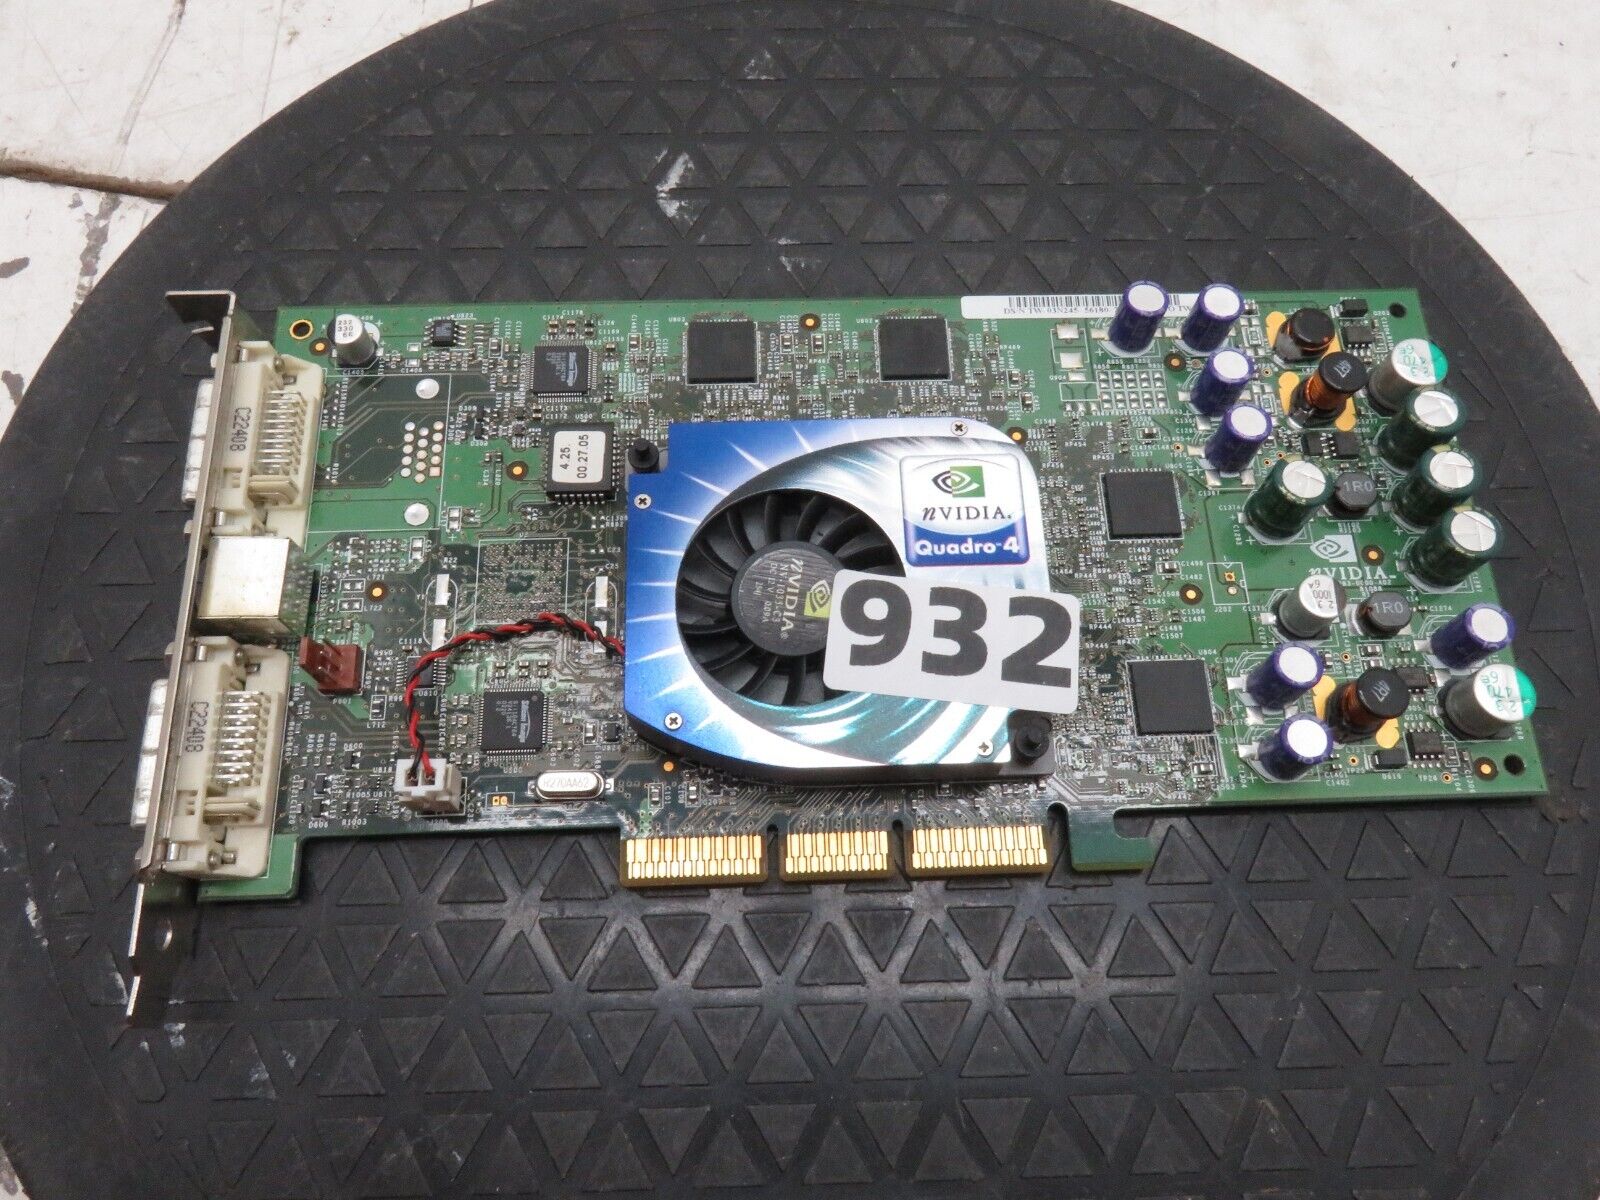 Nvidia Quadro 4 900 XGL P83 180-10083-0000-A02 AGP Video Graphics Card